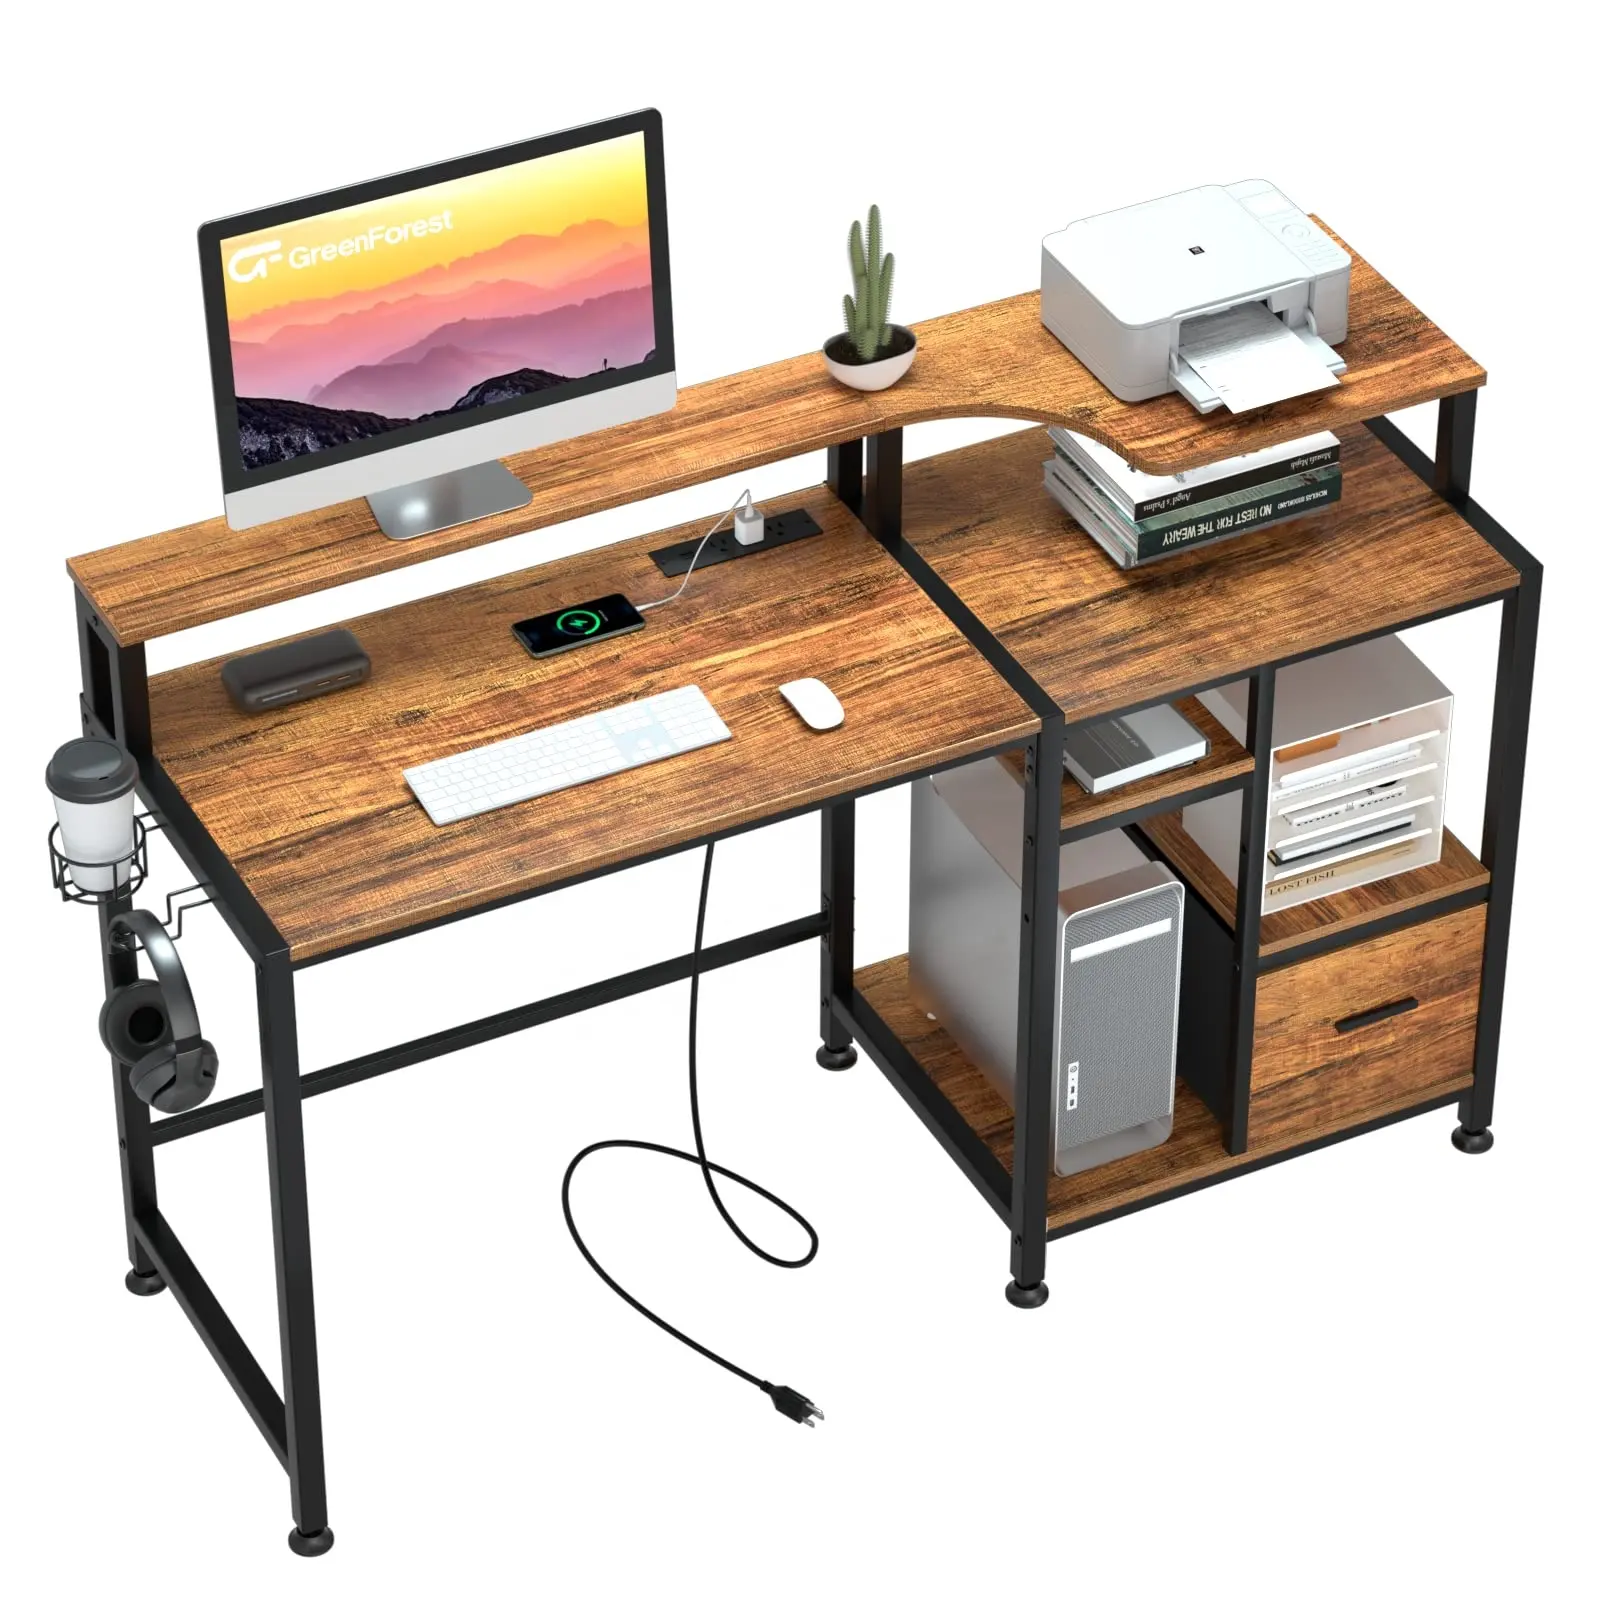 दराज और चार्जिंग स्टेशन के साथ आधुनिक कार्यालय कंप्यूटर डेस्क, प्रिंटर स्टैंड और मॉनिटर होल्डर के साथ लकड़ी का लेखन डेस्क